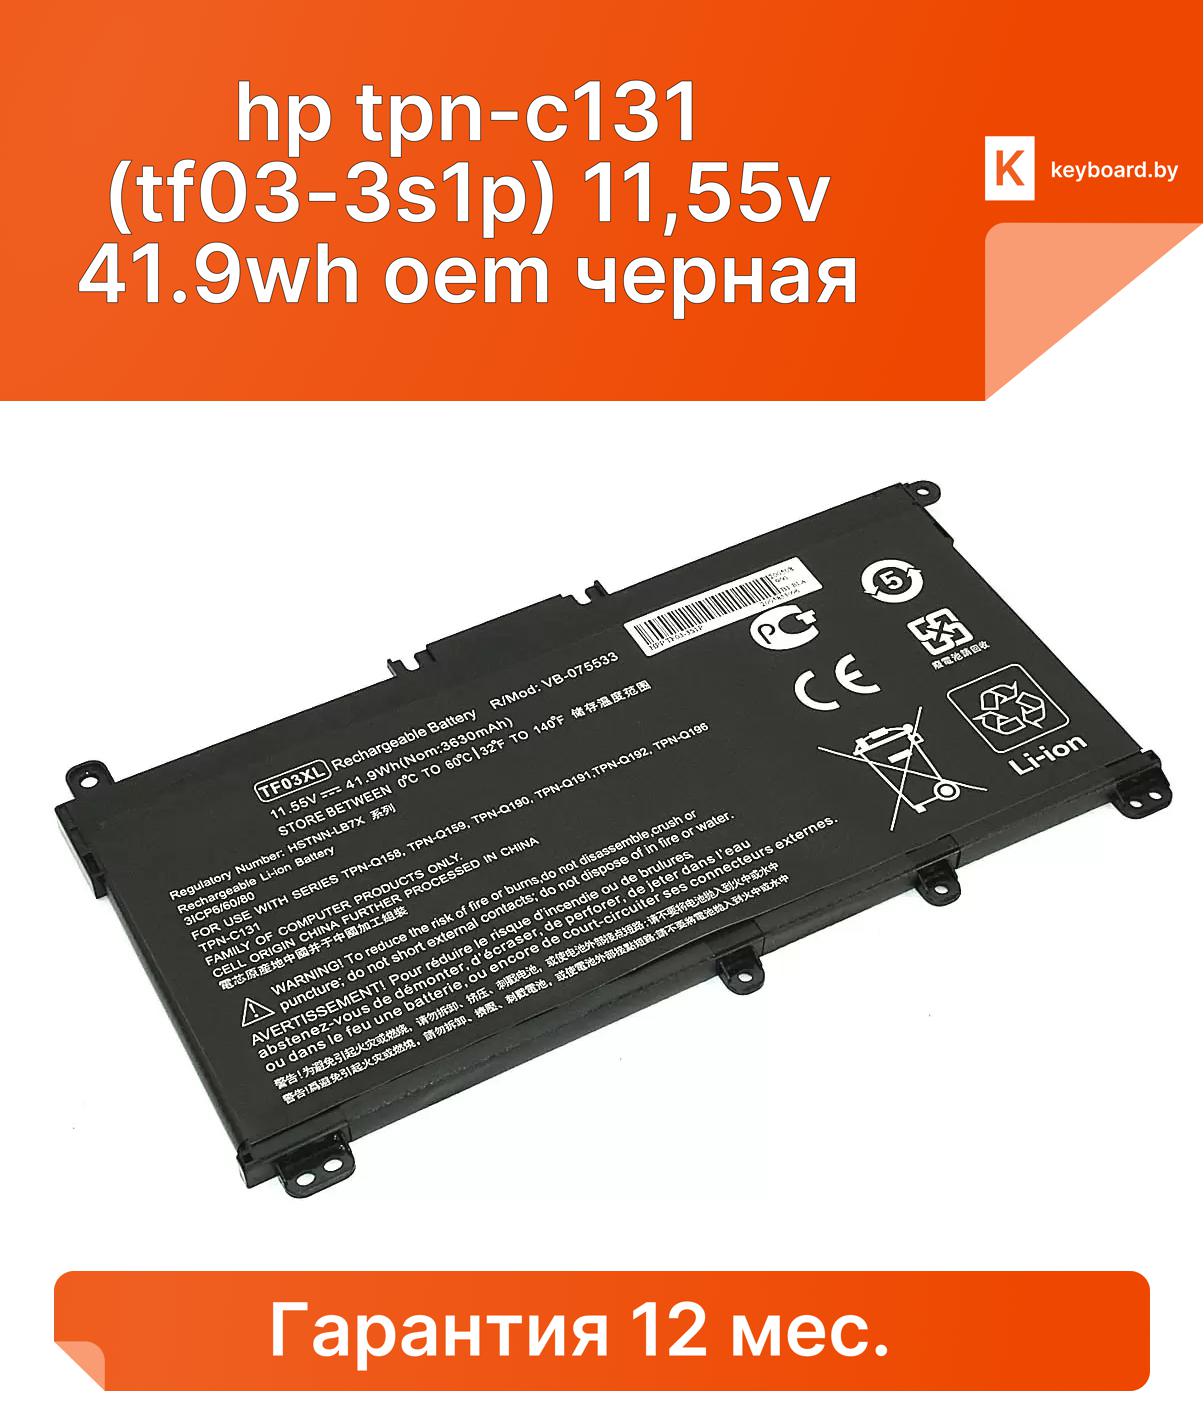 Аккумуляторная батарея для ноутбука hp tpn-c131 (tf03-3s1p) 11,55v 41.9wh oem черная